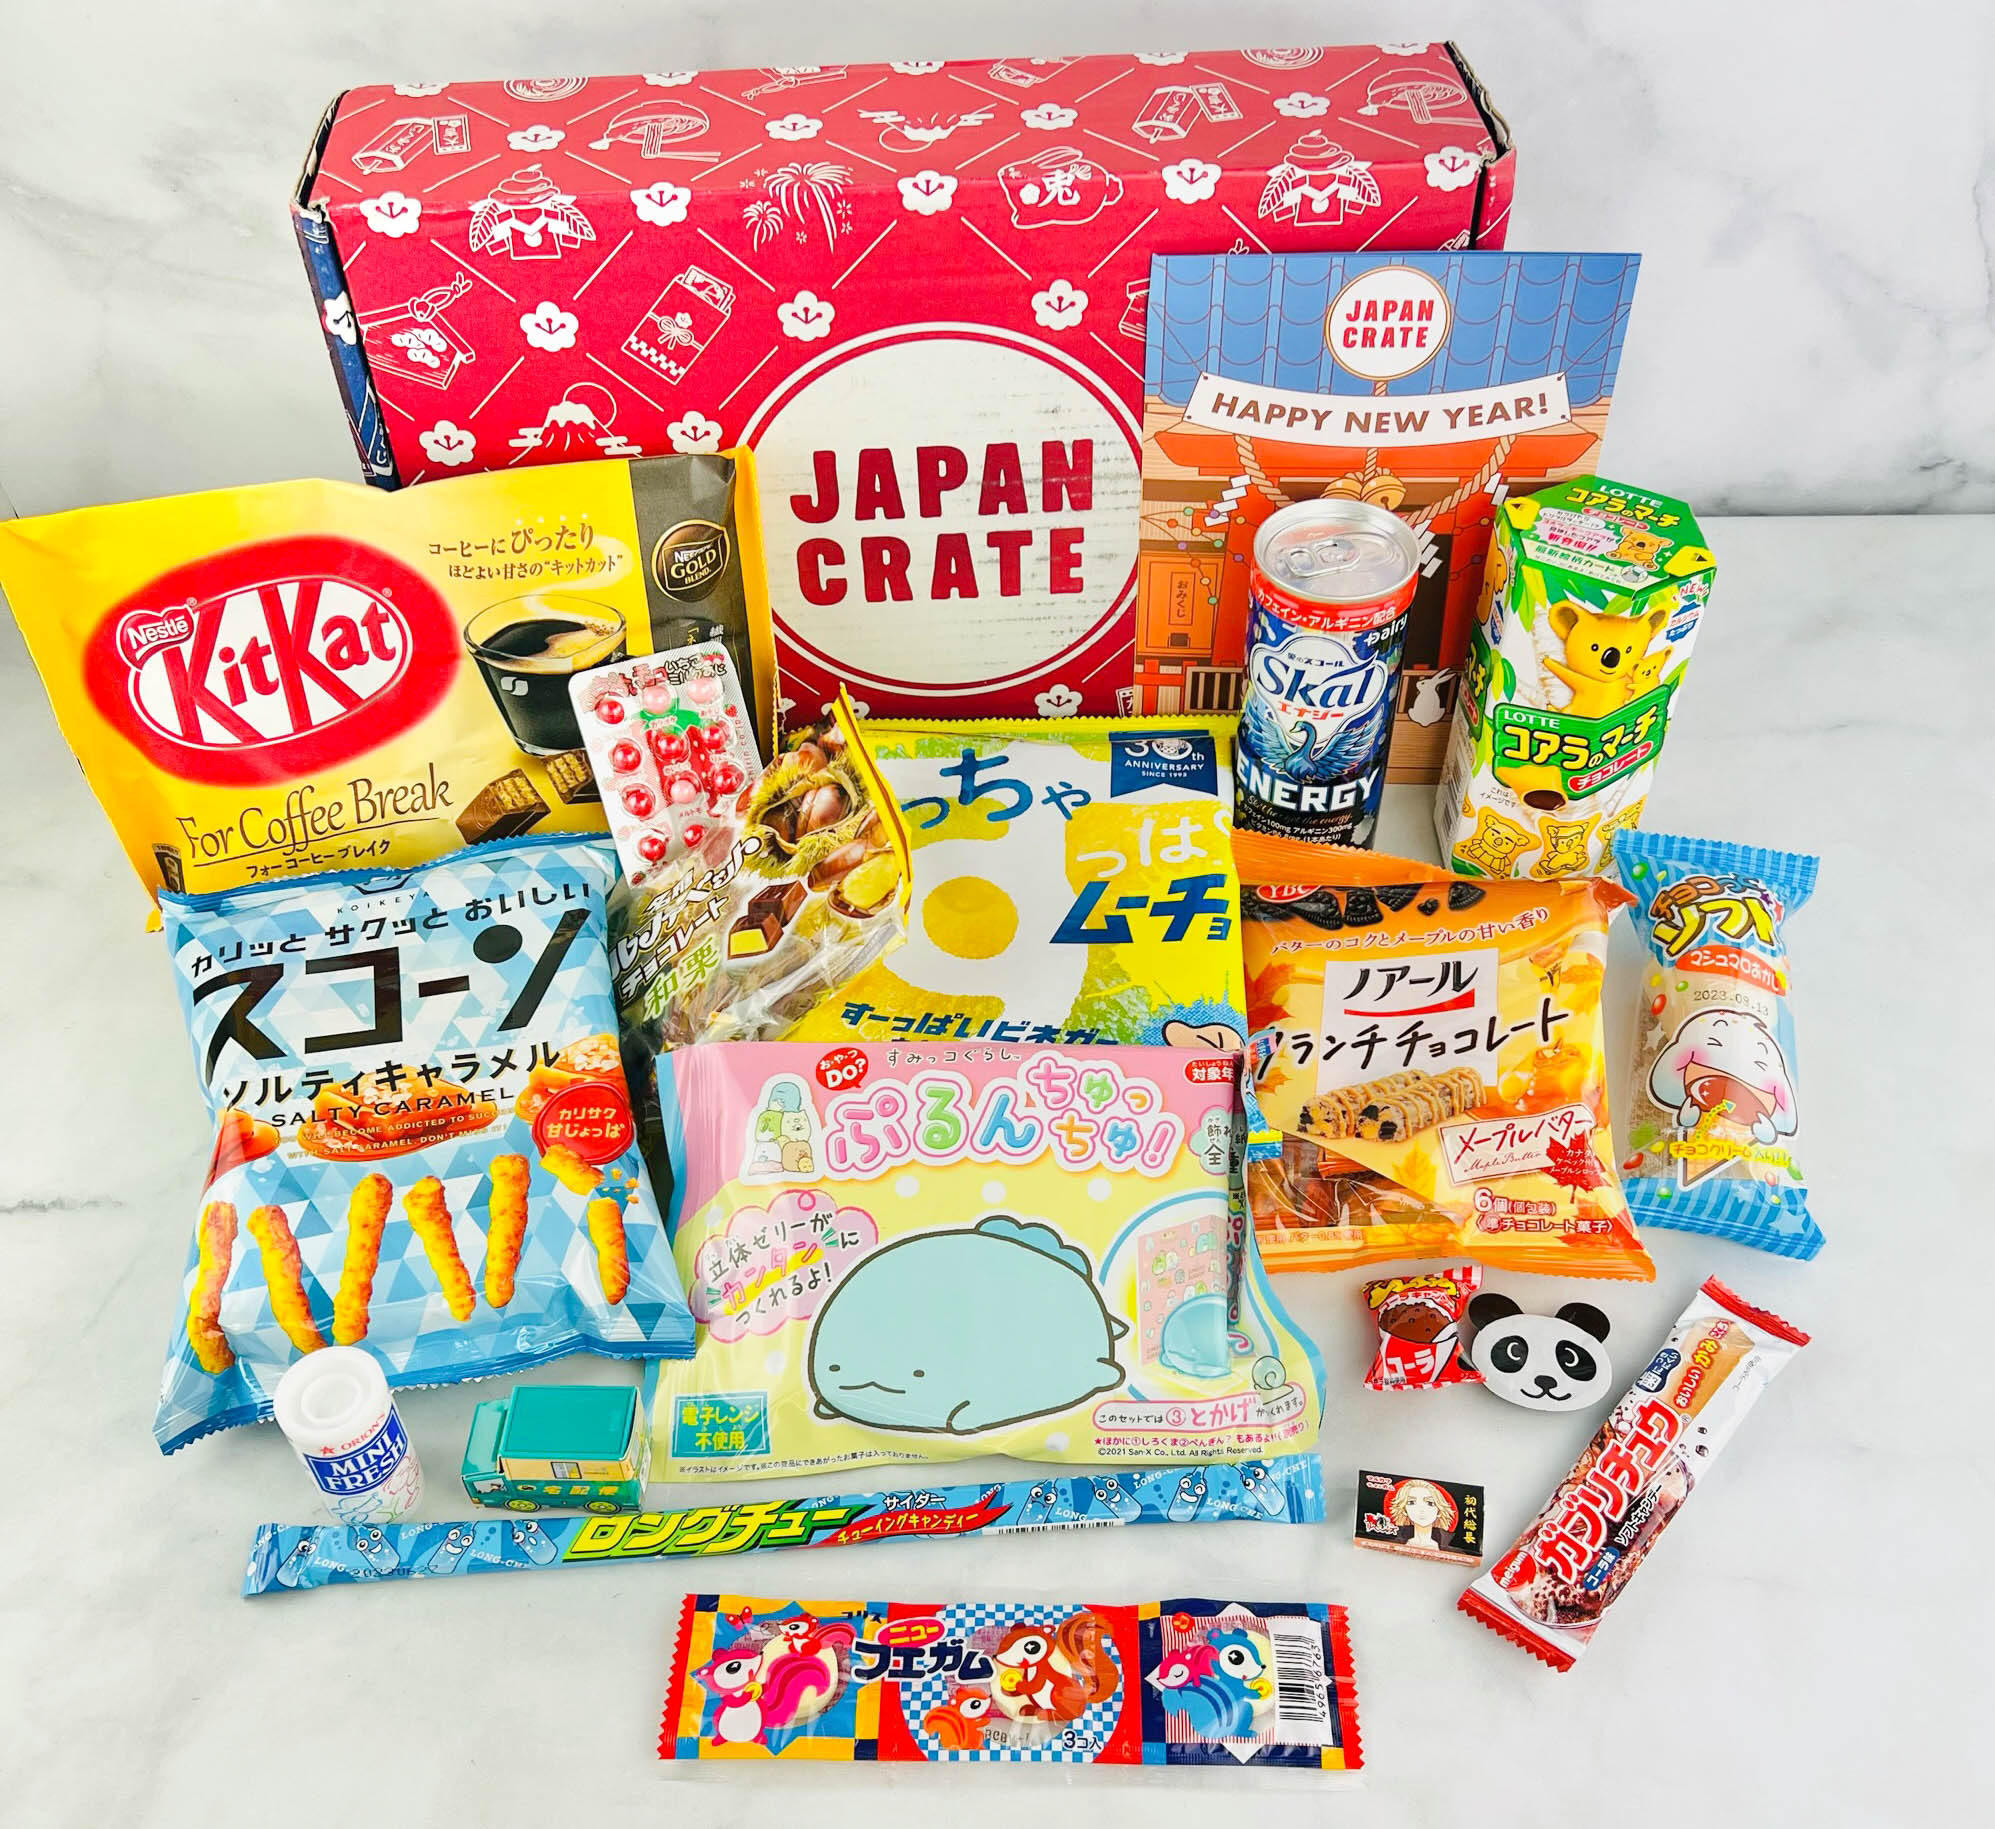 10 Best Japanese Snacks Box To Taste Japan In 2023